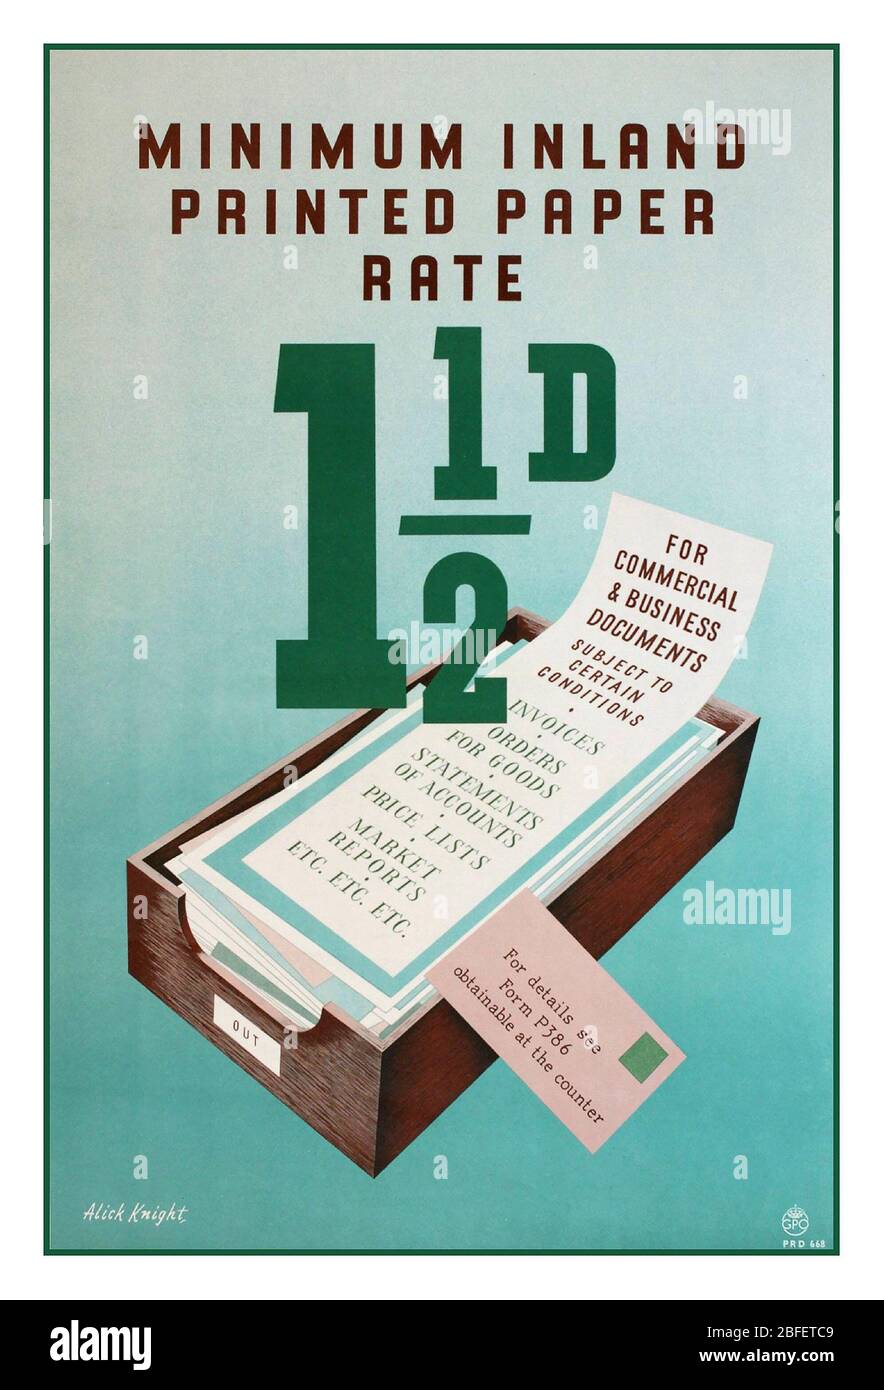 POSTGEBÜHREN UK Vintage Archive GPO Information Poster 1950s Post Postpost Postpost Inlandpapier Rate 1 1/2 d für kommerzielle und geschäftliche Dokumente Stockfoto